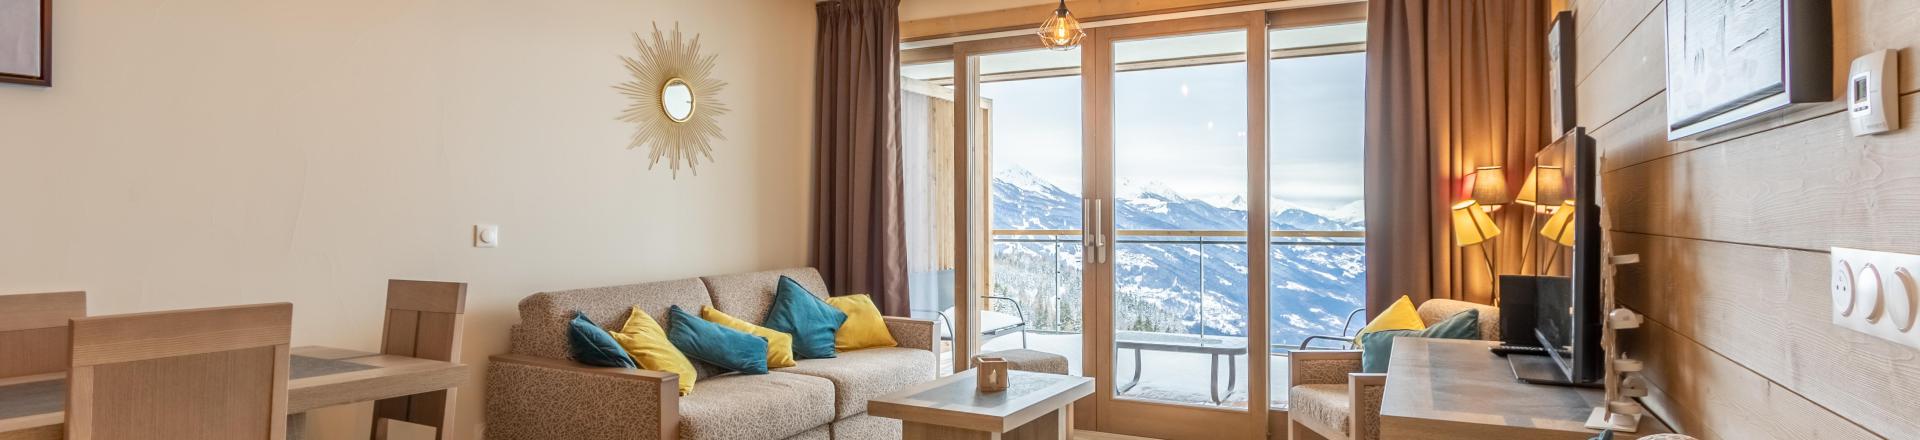 Location au ski Appartement 3 pièces 6 personnes (504) - Résidence le Ridge - Les Arcs